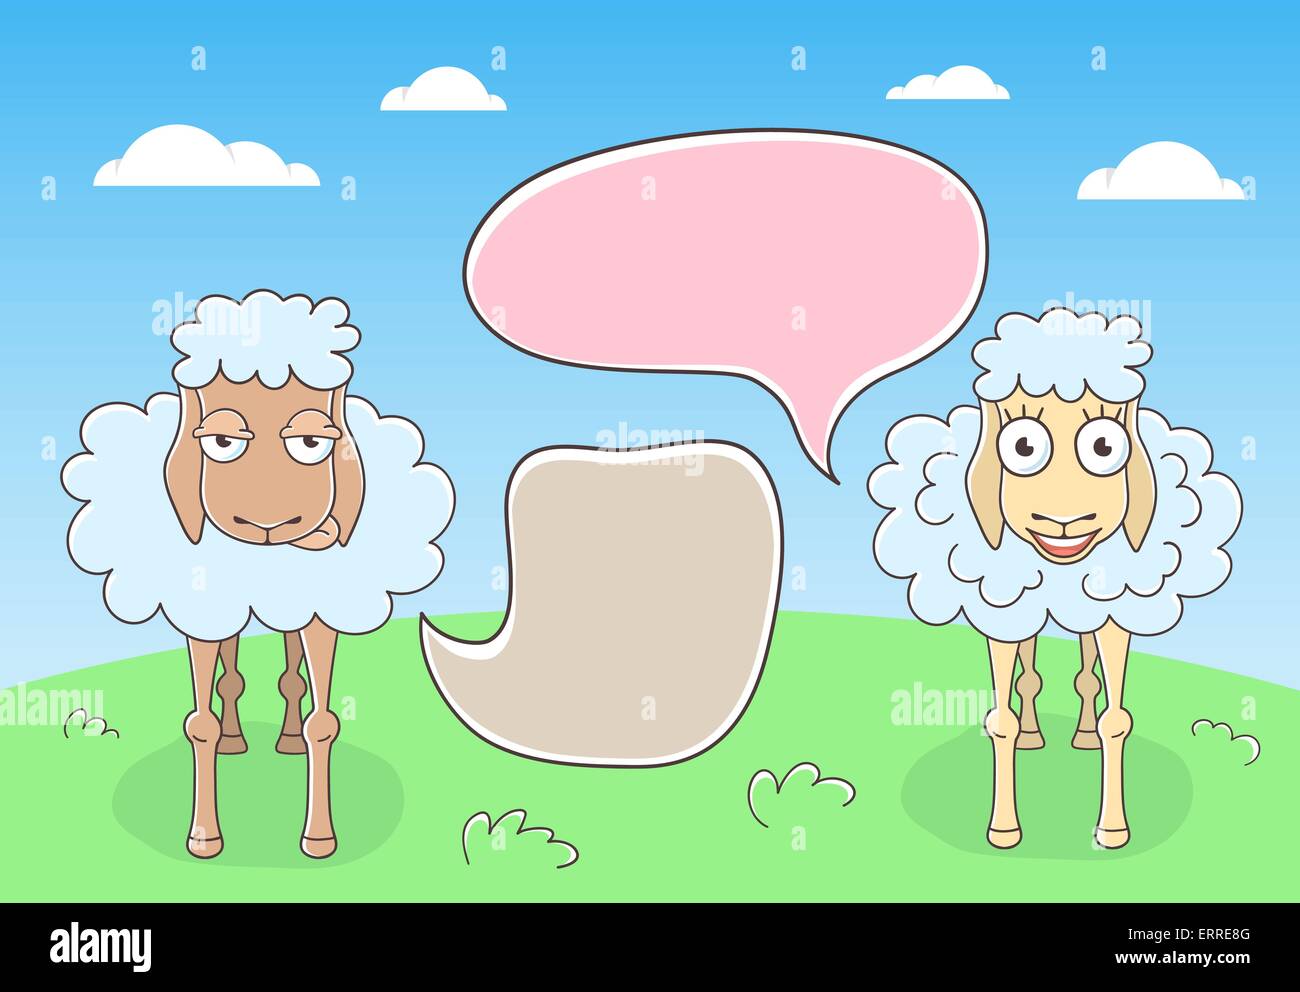 Vector cartoon disegnati a mano illustrazione della conversazione di due pecore con colorati fumetti. Illustrazione Vettoriale